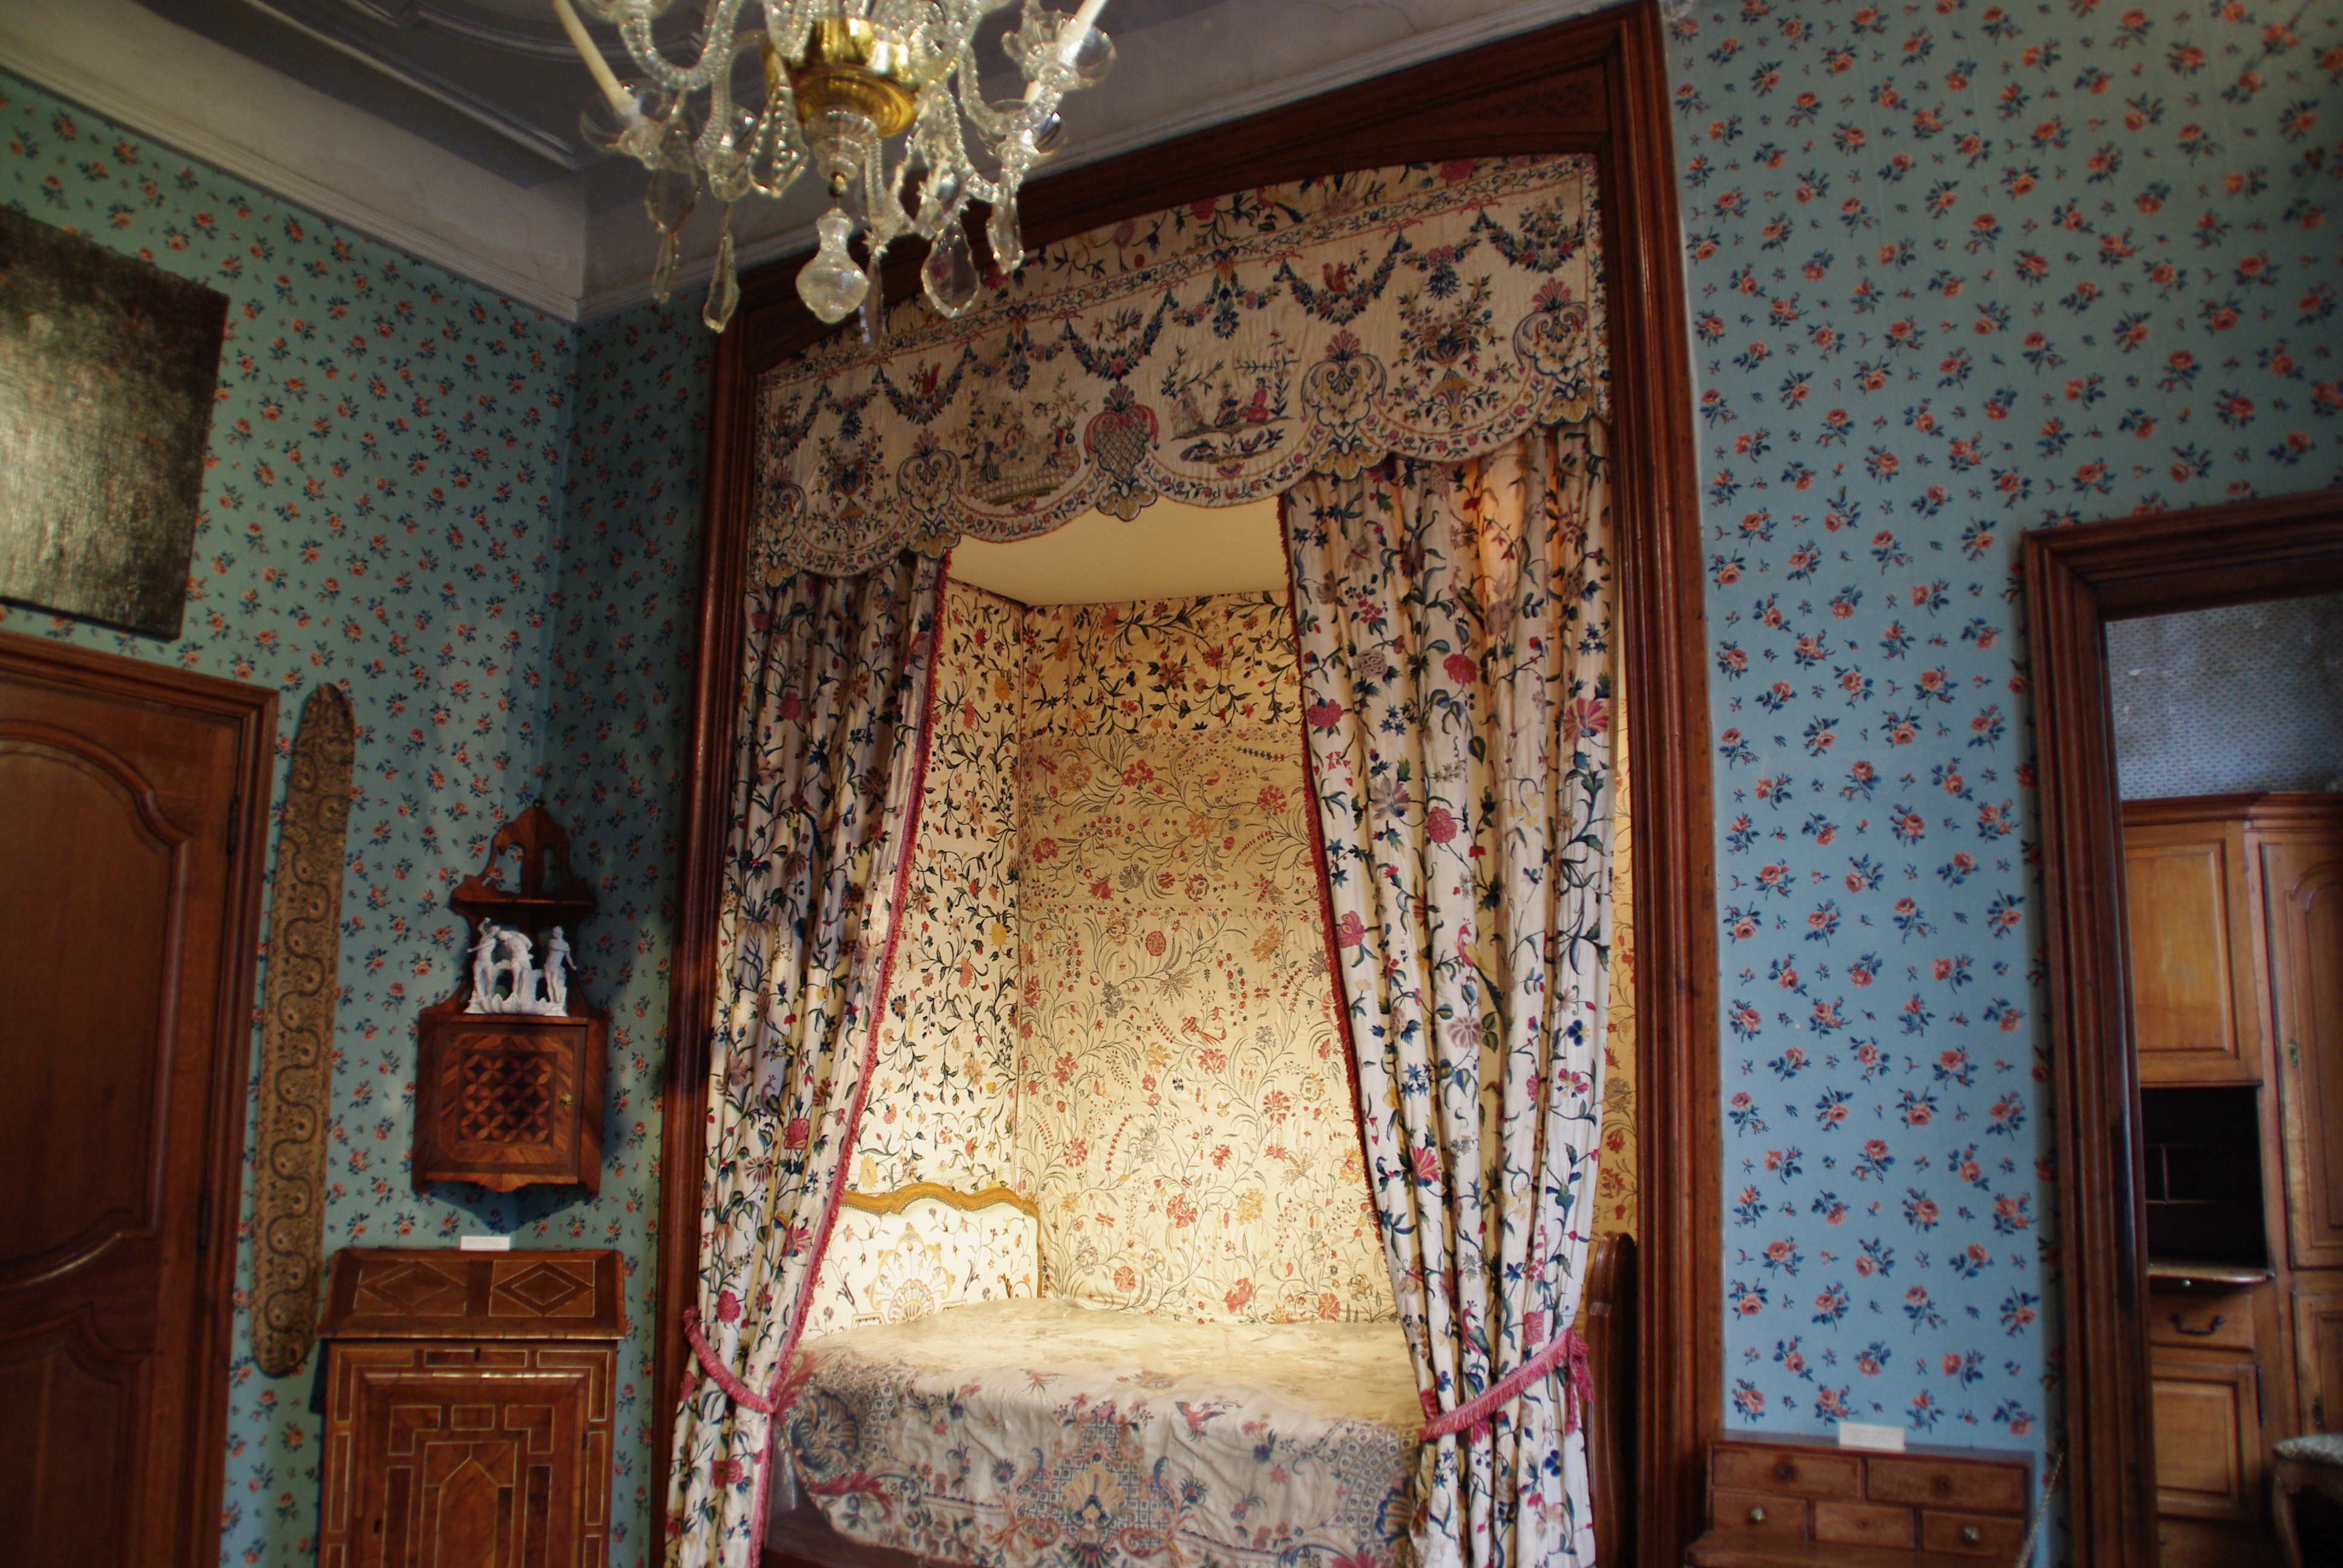 Rideaux de la chambre de la Marquise. (Textile)